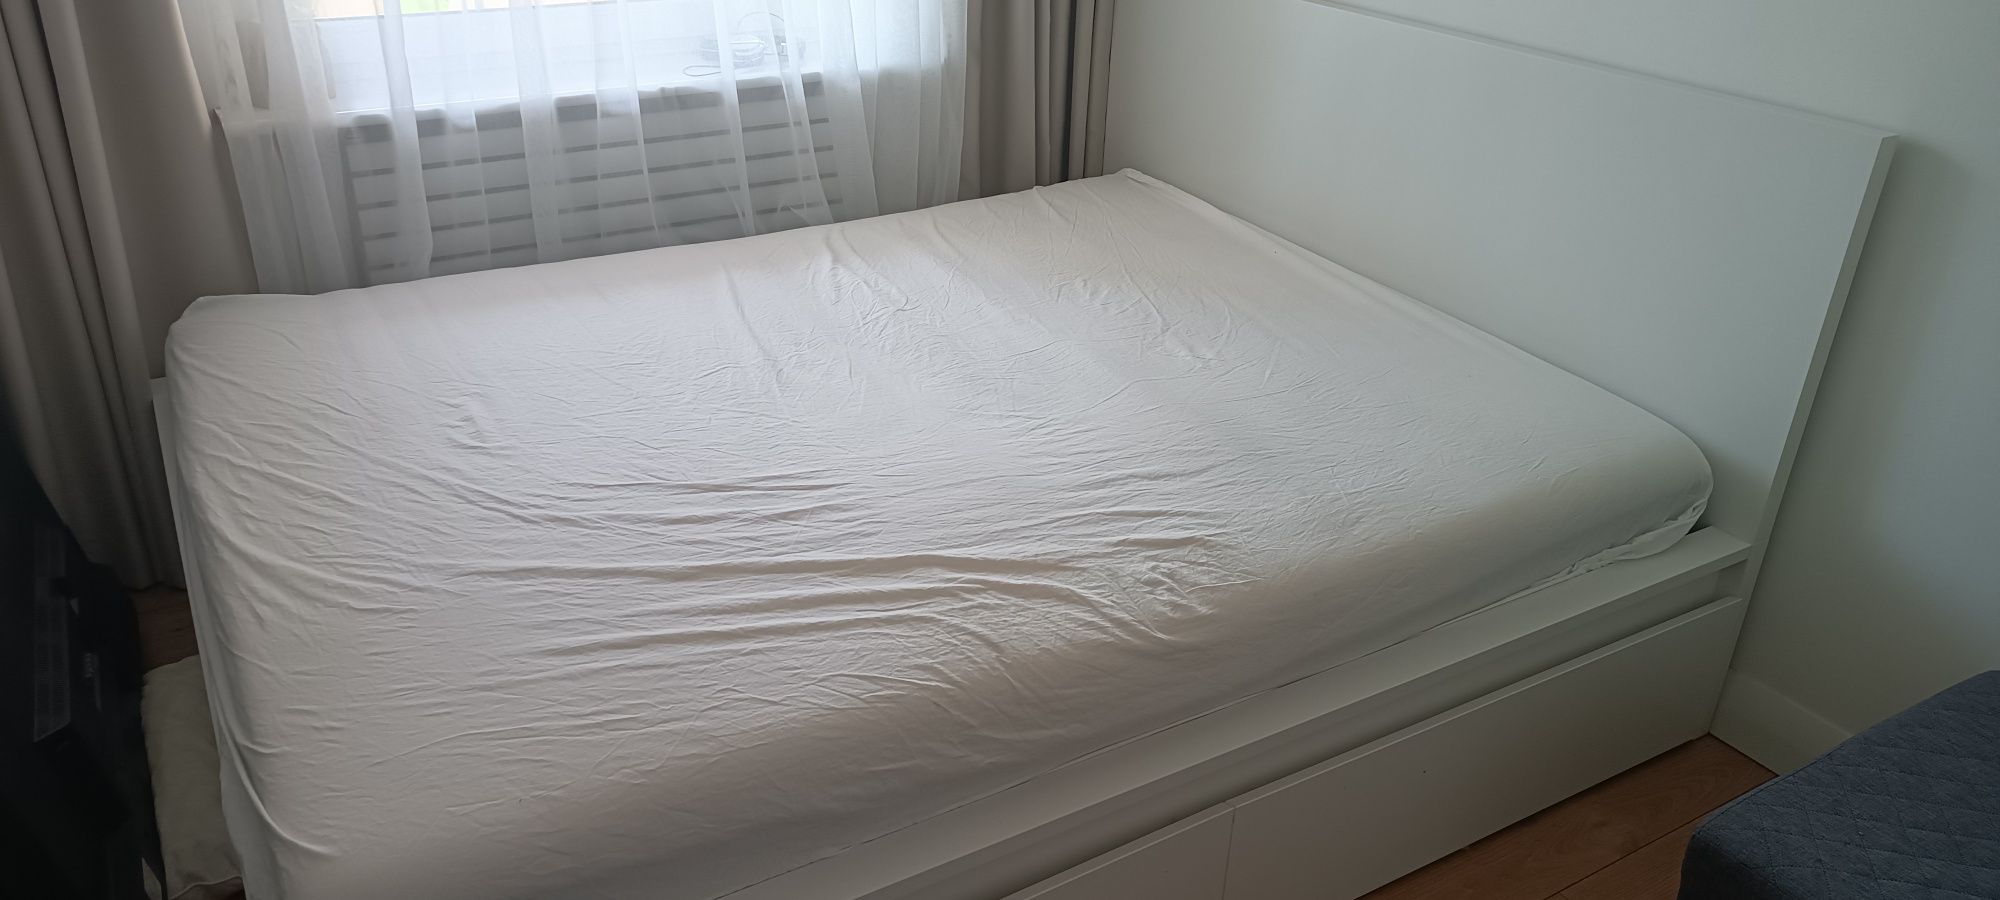 Używane łóżko malm Ikea, 160x200cm, stan bardzo dobry, lonset i szufla